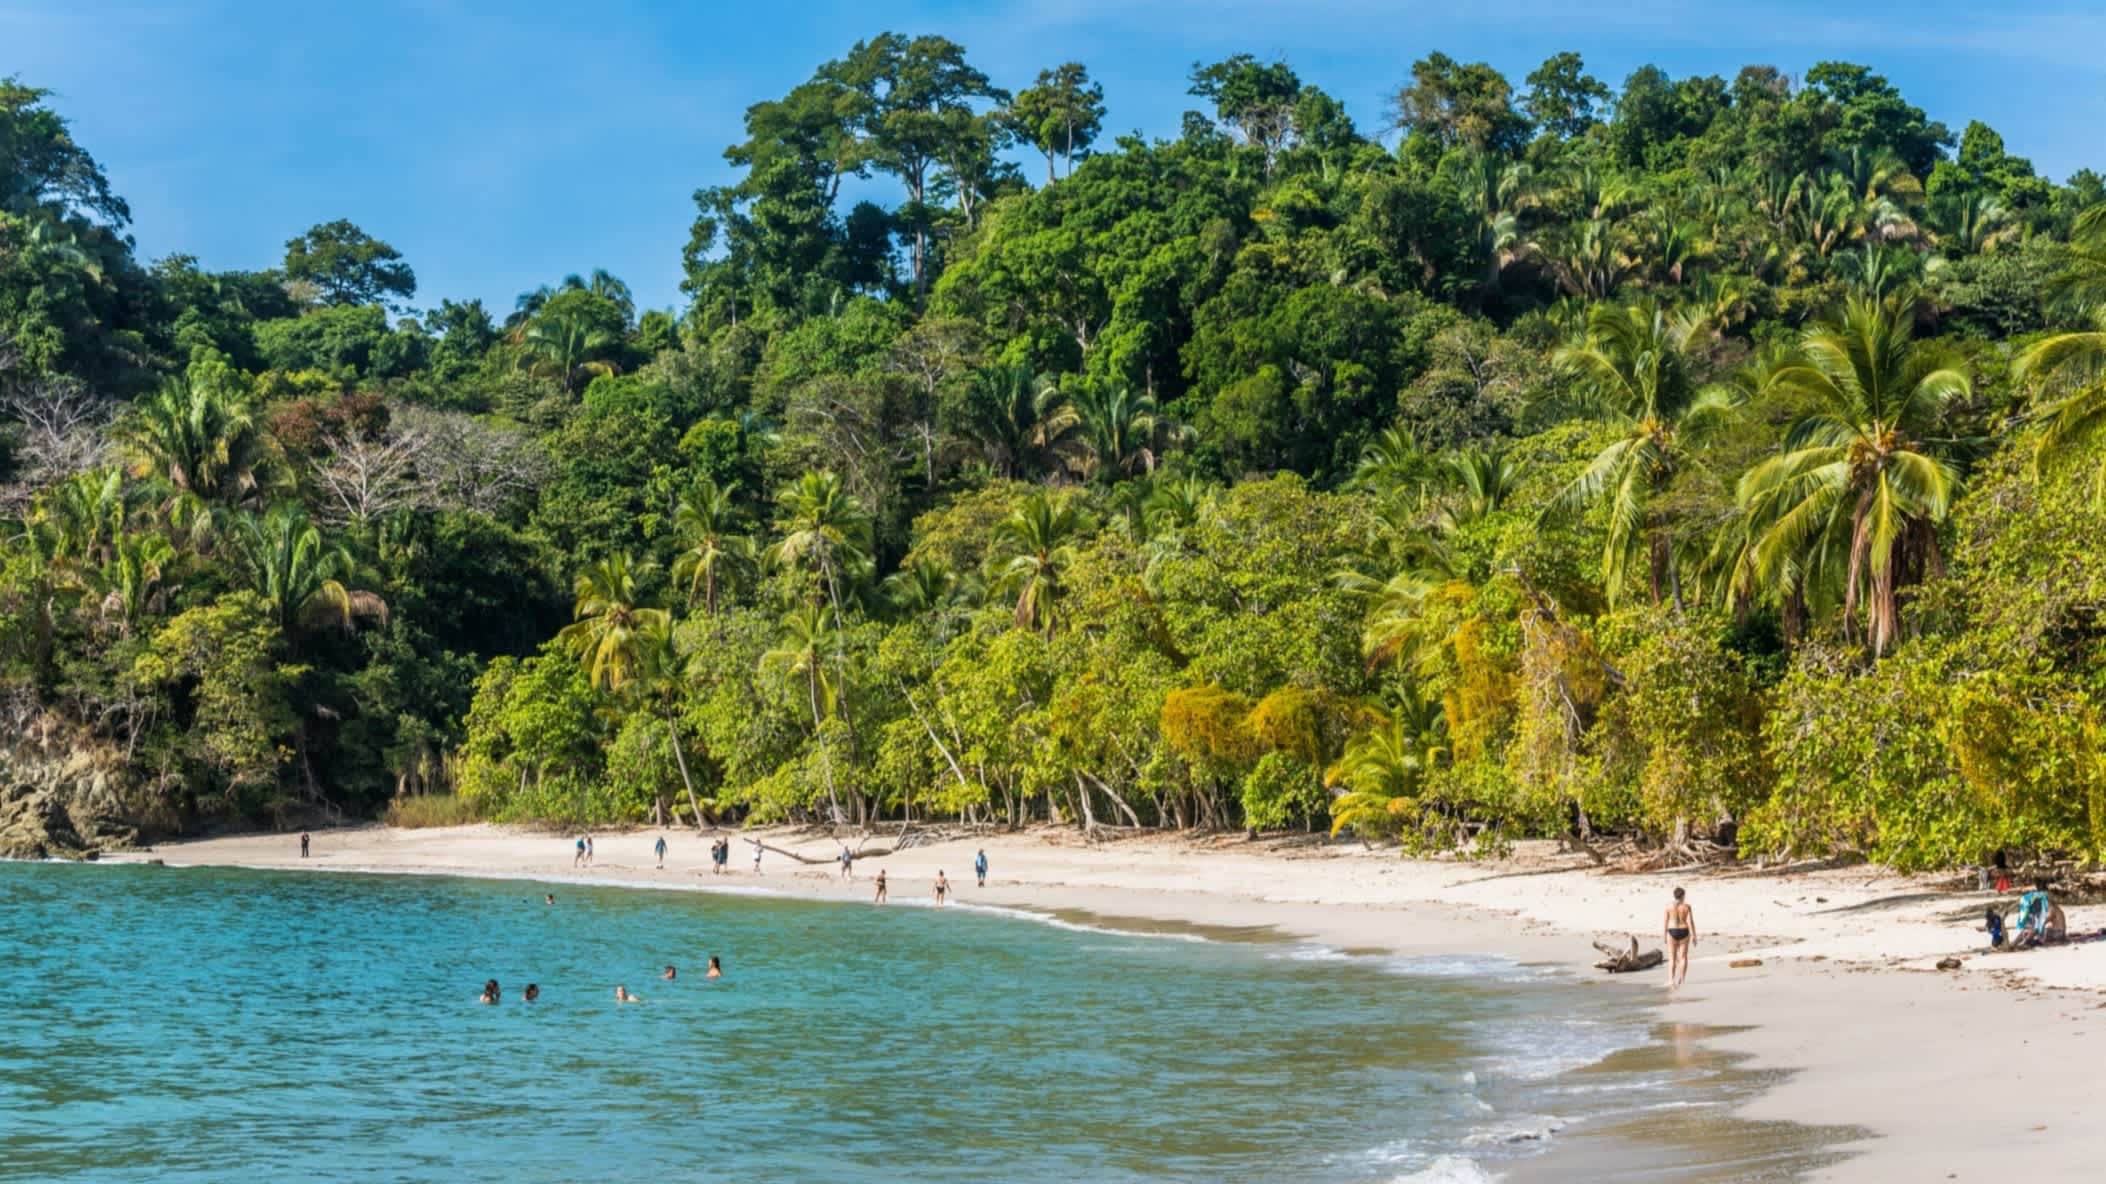 Blick auf den Biesanz-Strand in der Nähe des Nationalparks Manuel Antonio in Costa Rica mit Besuchern am Strand und Menschen im Wasser sowie dichtem Dschungel im Hintergrund. 